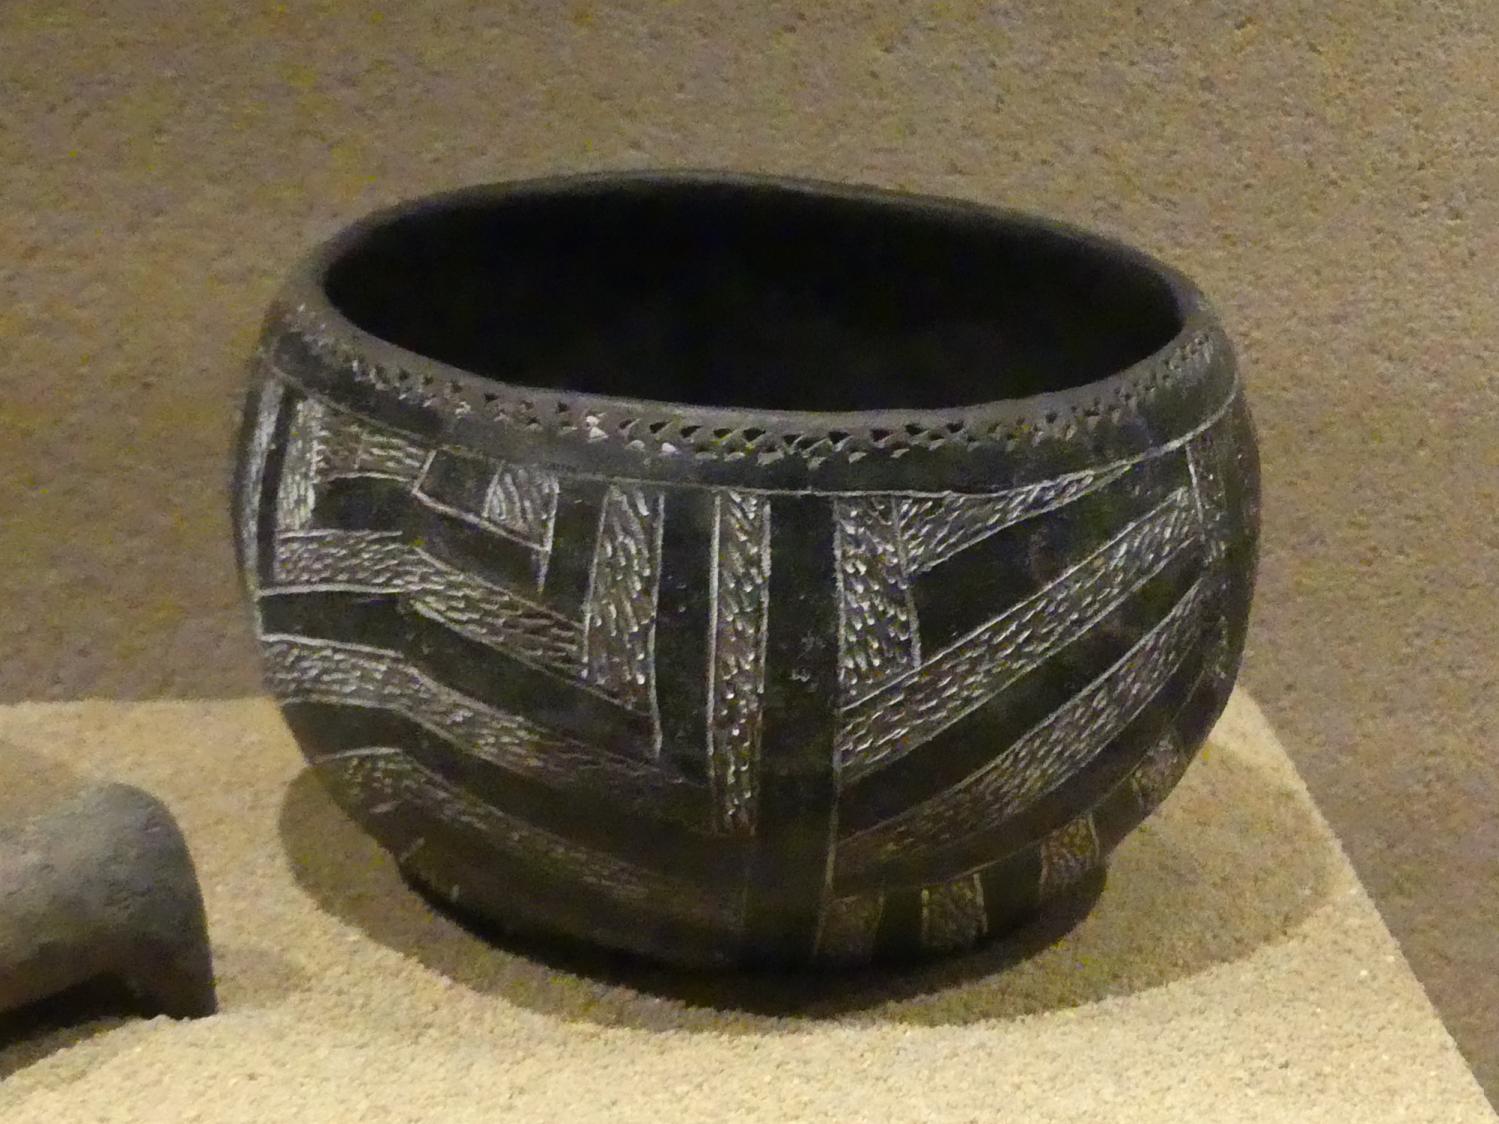 Bauchiger Napf mit eingefärbten Ritzbändern, C-Gruppe, 1900 - 1550 v. Chr., 1800 - 1700 v. Chr.